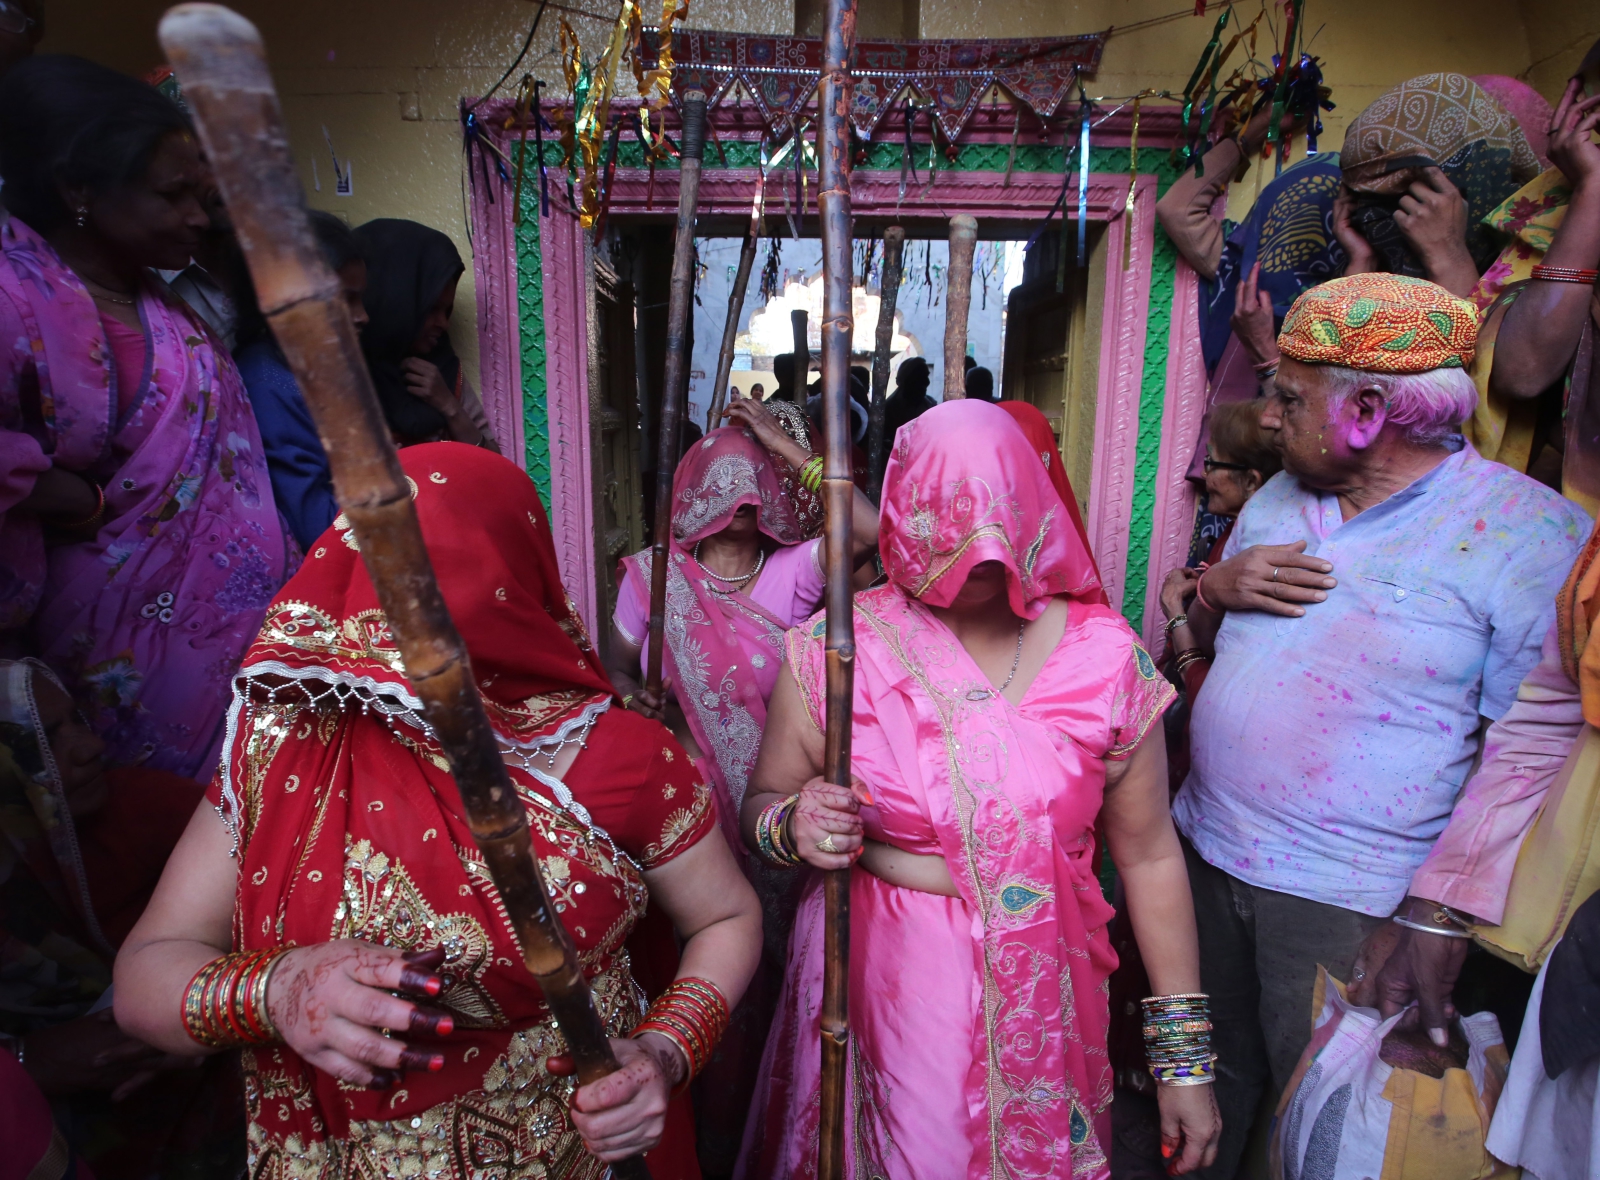 Indyjskie kobiety biją mężczyzn kijami w trakcie corocznego festiwalu Lathmar Holi w Barsanie, Indie.